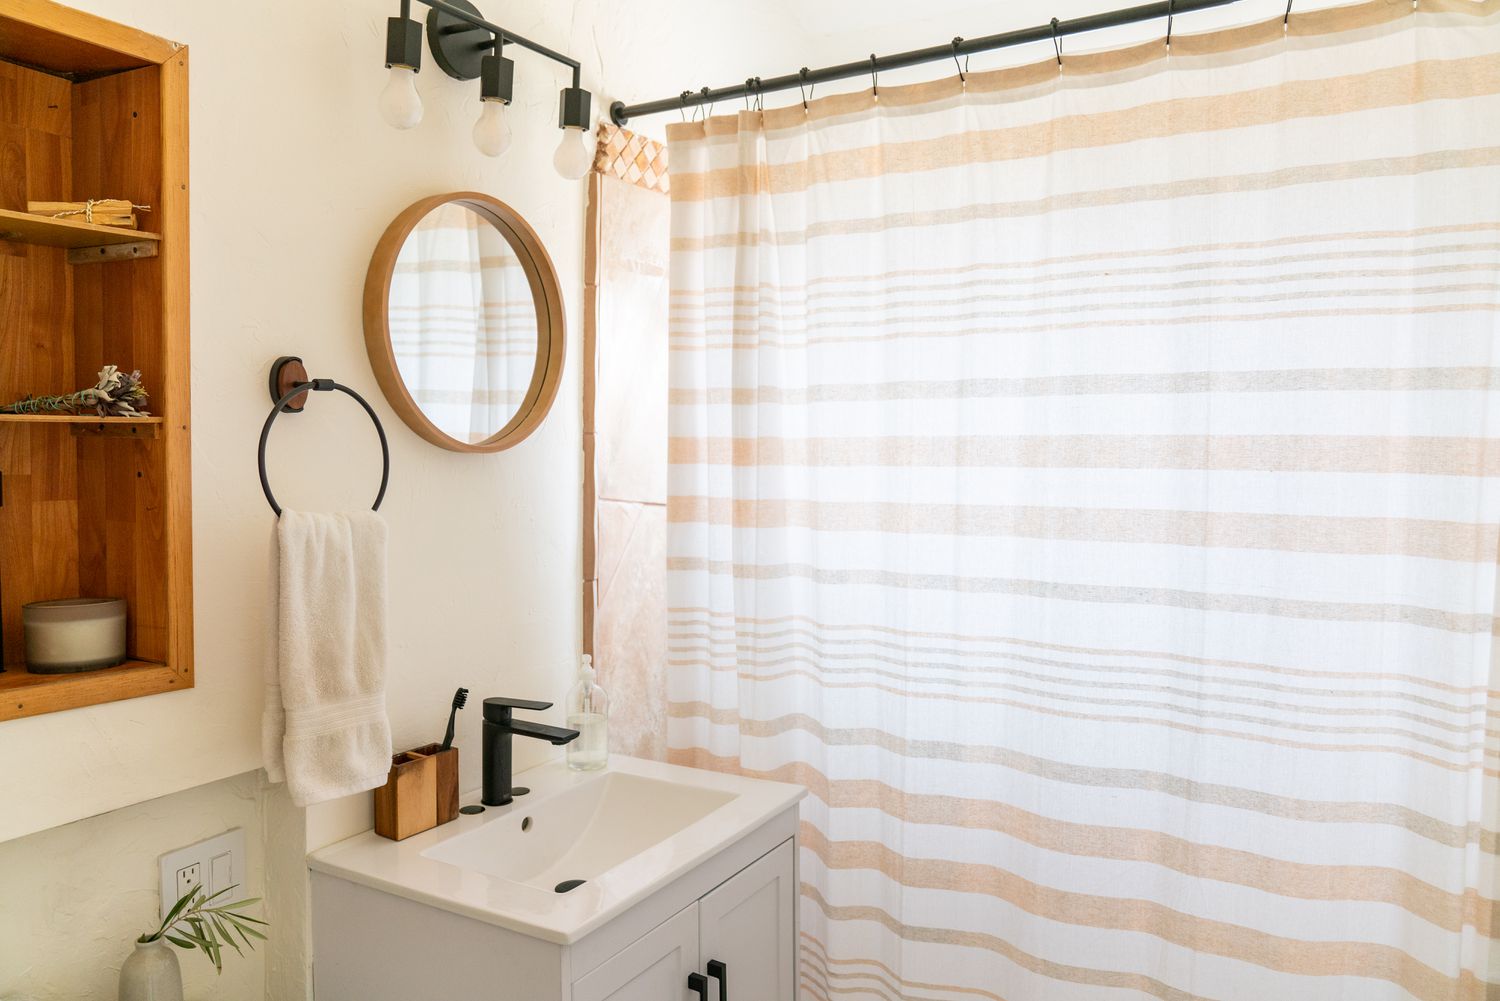 Banheiro pequeno com espelho redondo pequeno ao lado de cortina de chuveiro branca e bronzeada